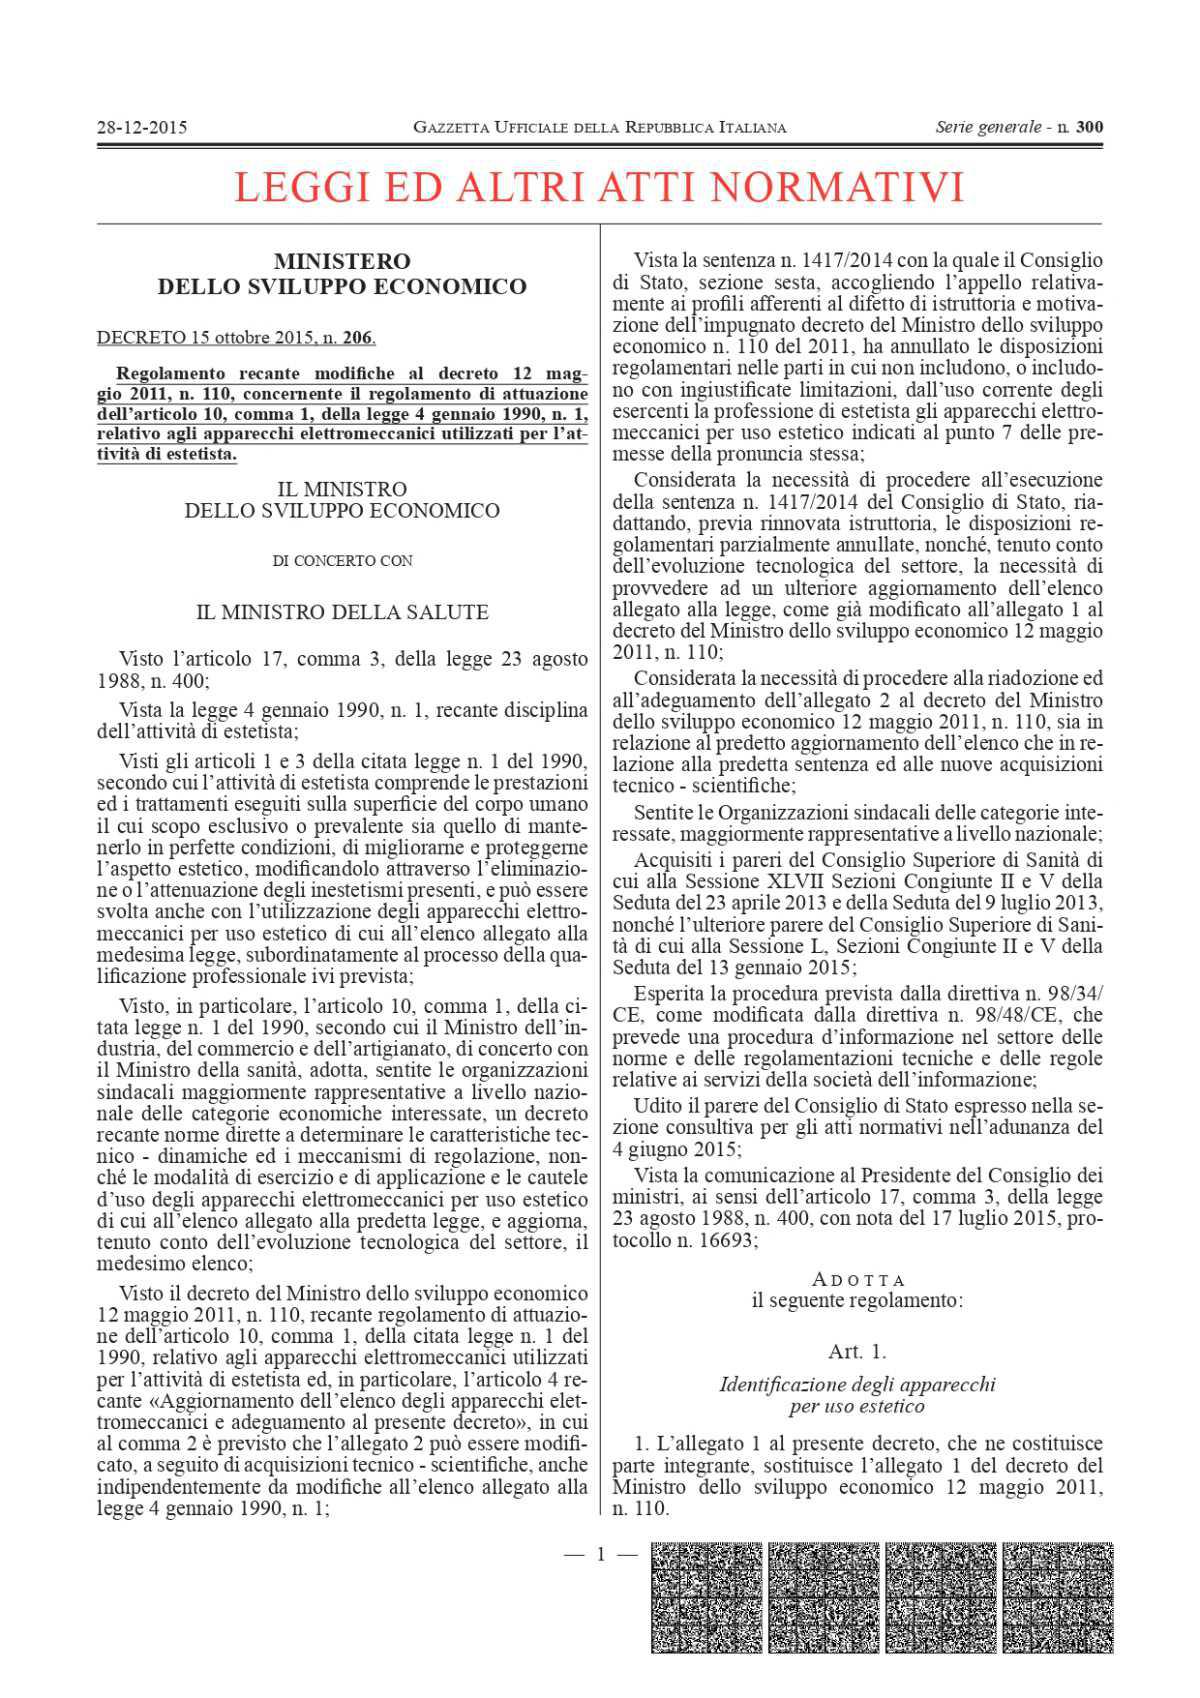 DECRETO MINISTERIALE 206 DEL 2015 allegato alla legge 1 del 4 GENNAIO 1990